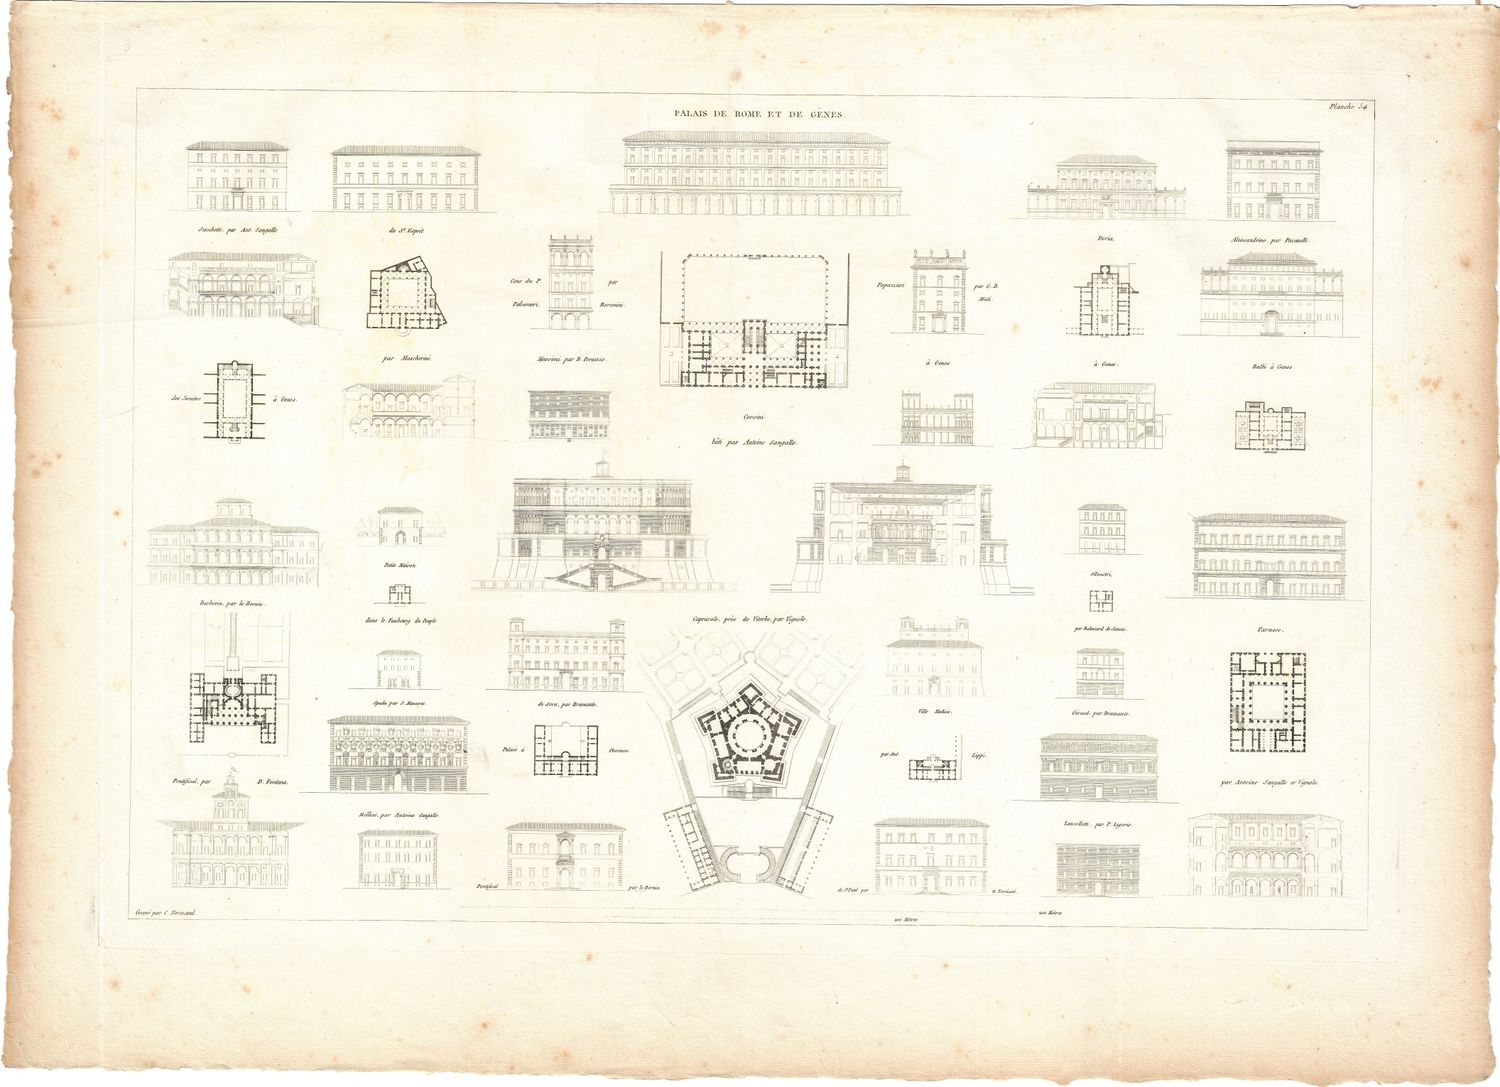 1799 Architectural Engraving of Palais de Roma et Genes by JNL Durand